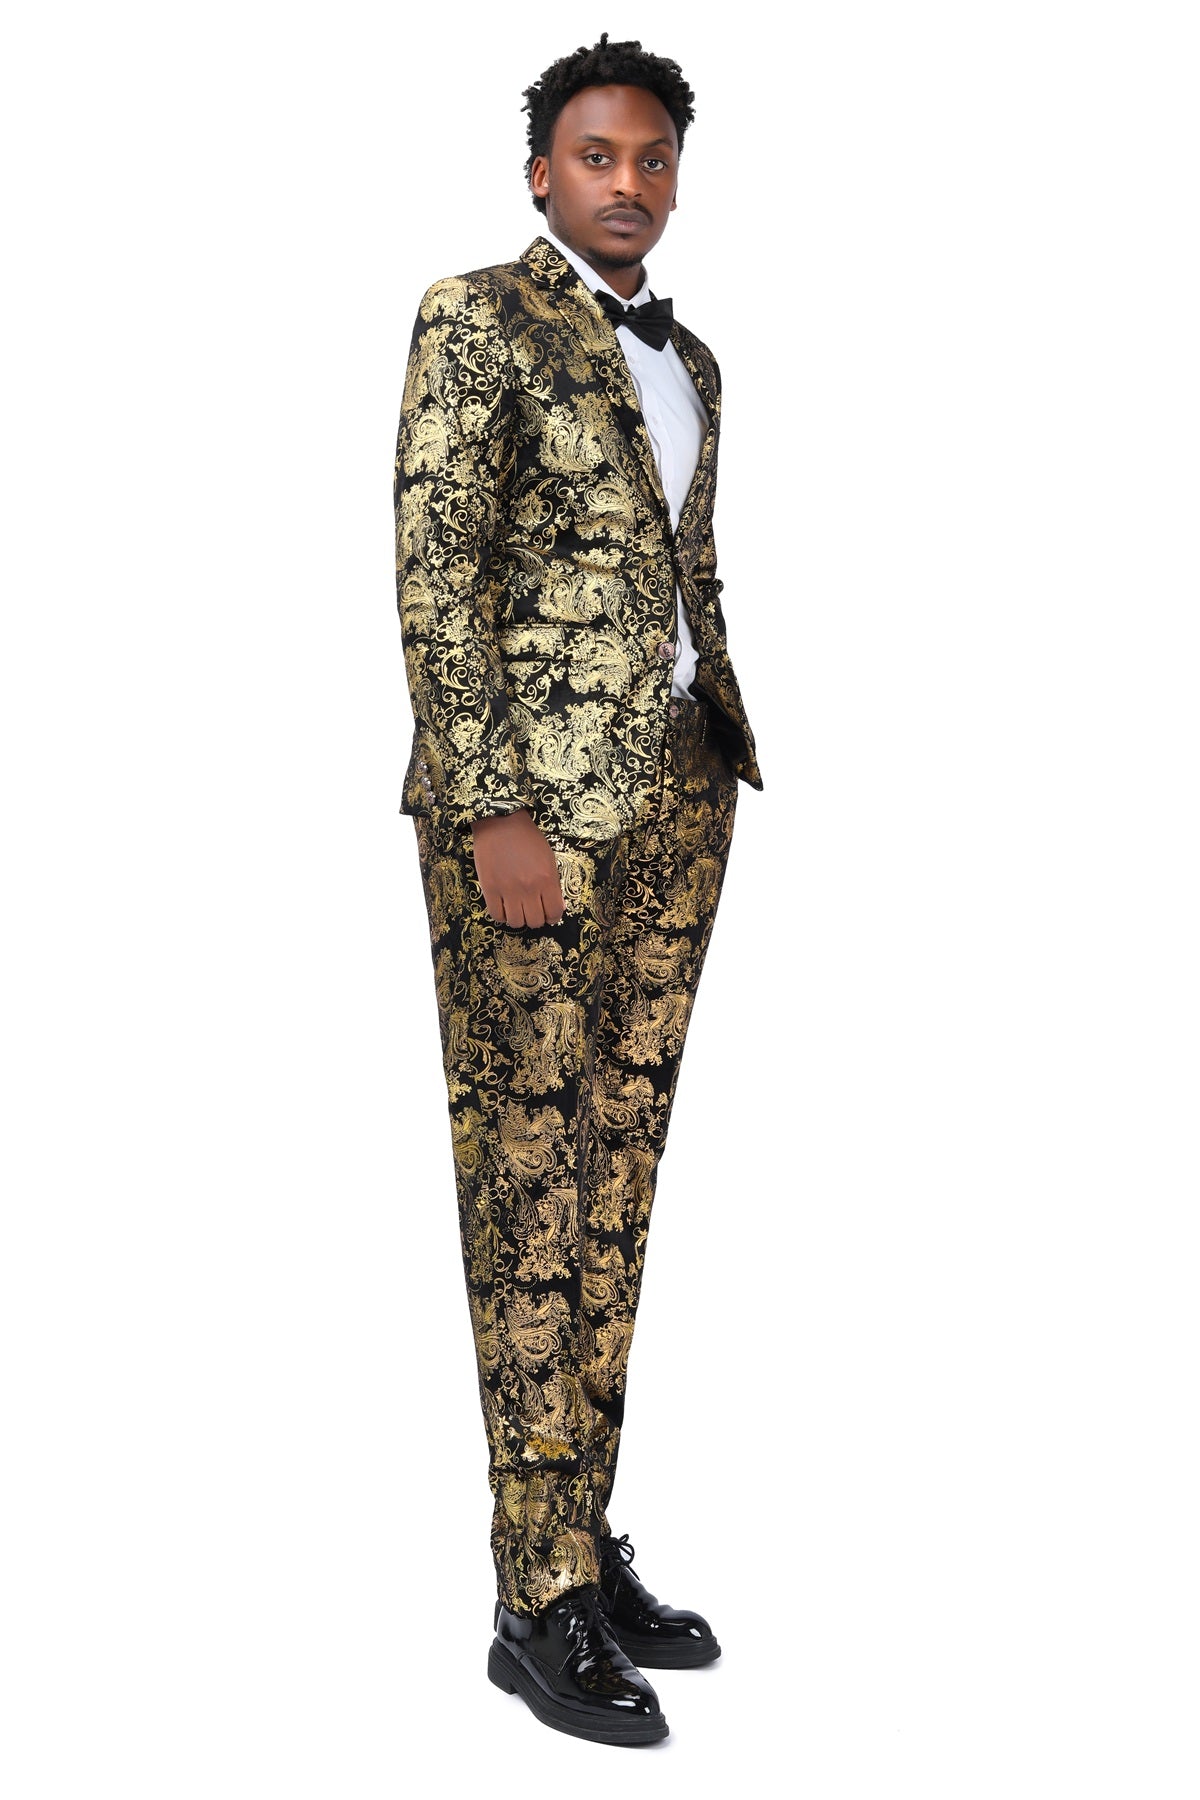 2-Piece Slim Fit Stylish Dress Floral Suit Gold